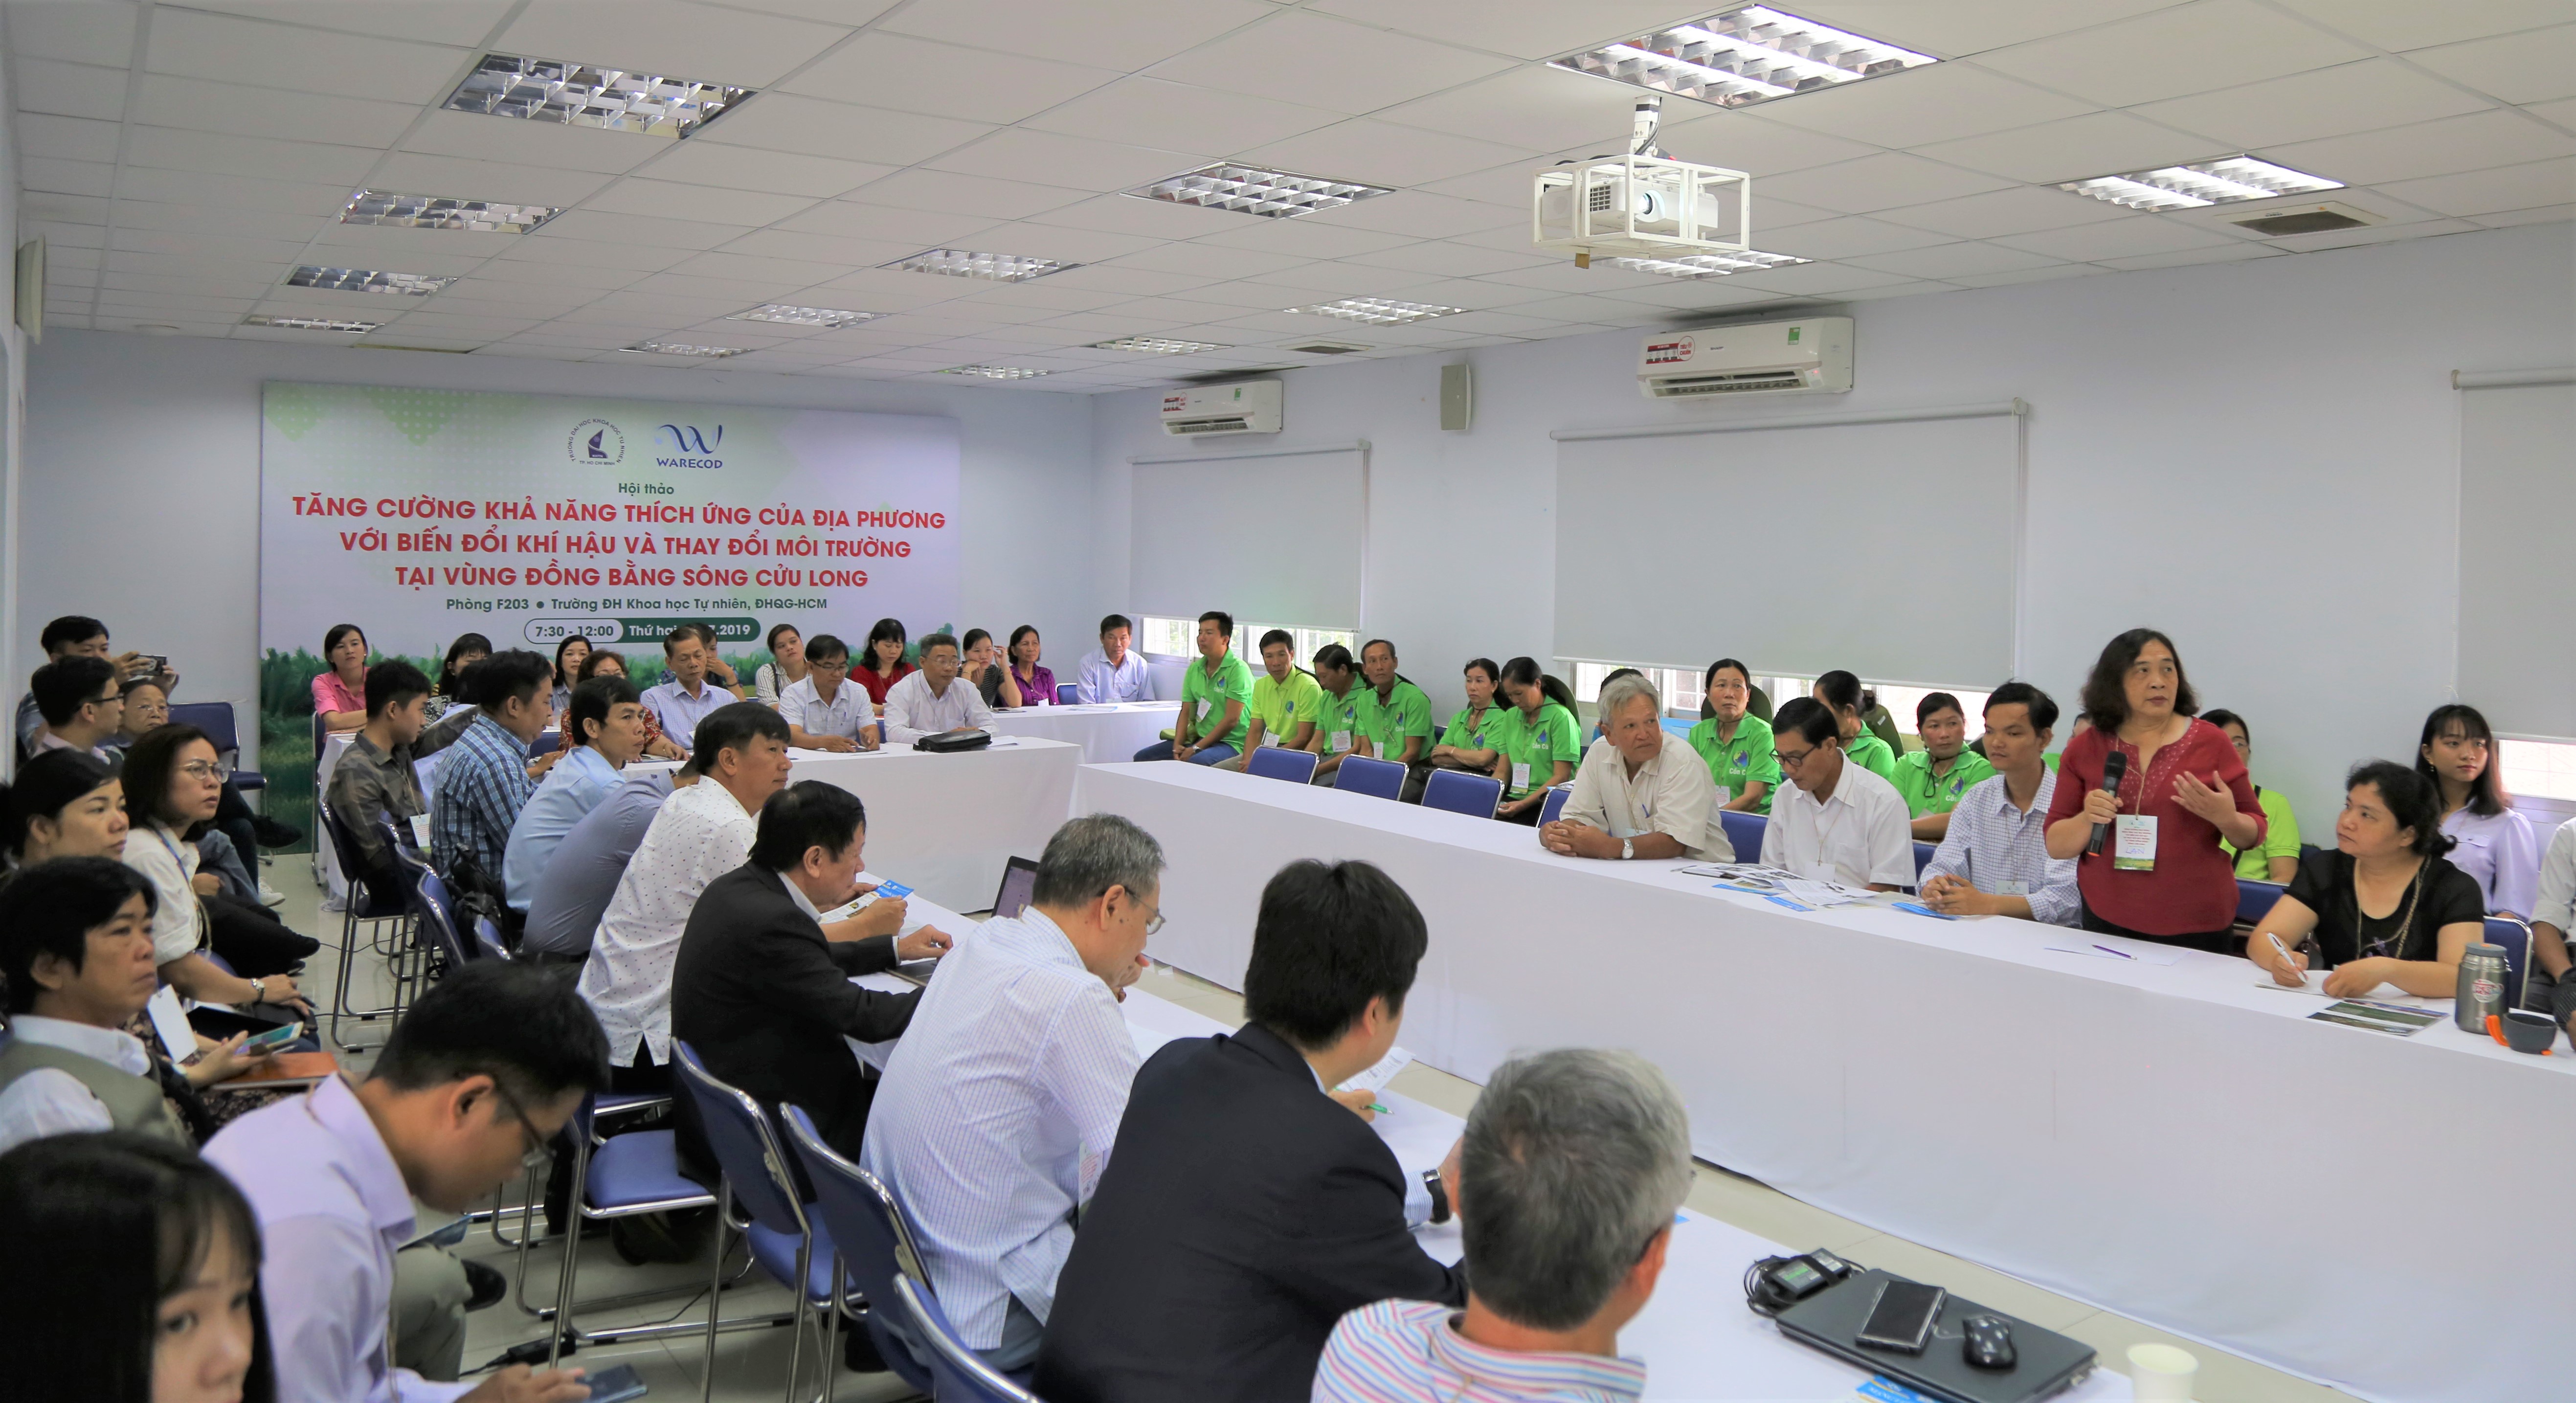 Hội thảo “Tăng cường khả năng thích ứng của địa phương với biến đổi khí hậu và thay đổi môi trường tại vùng Đồng bằng sông Cửu Long”